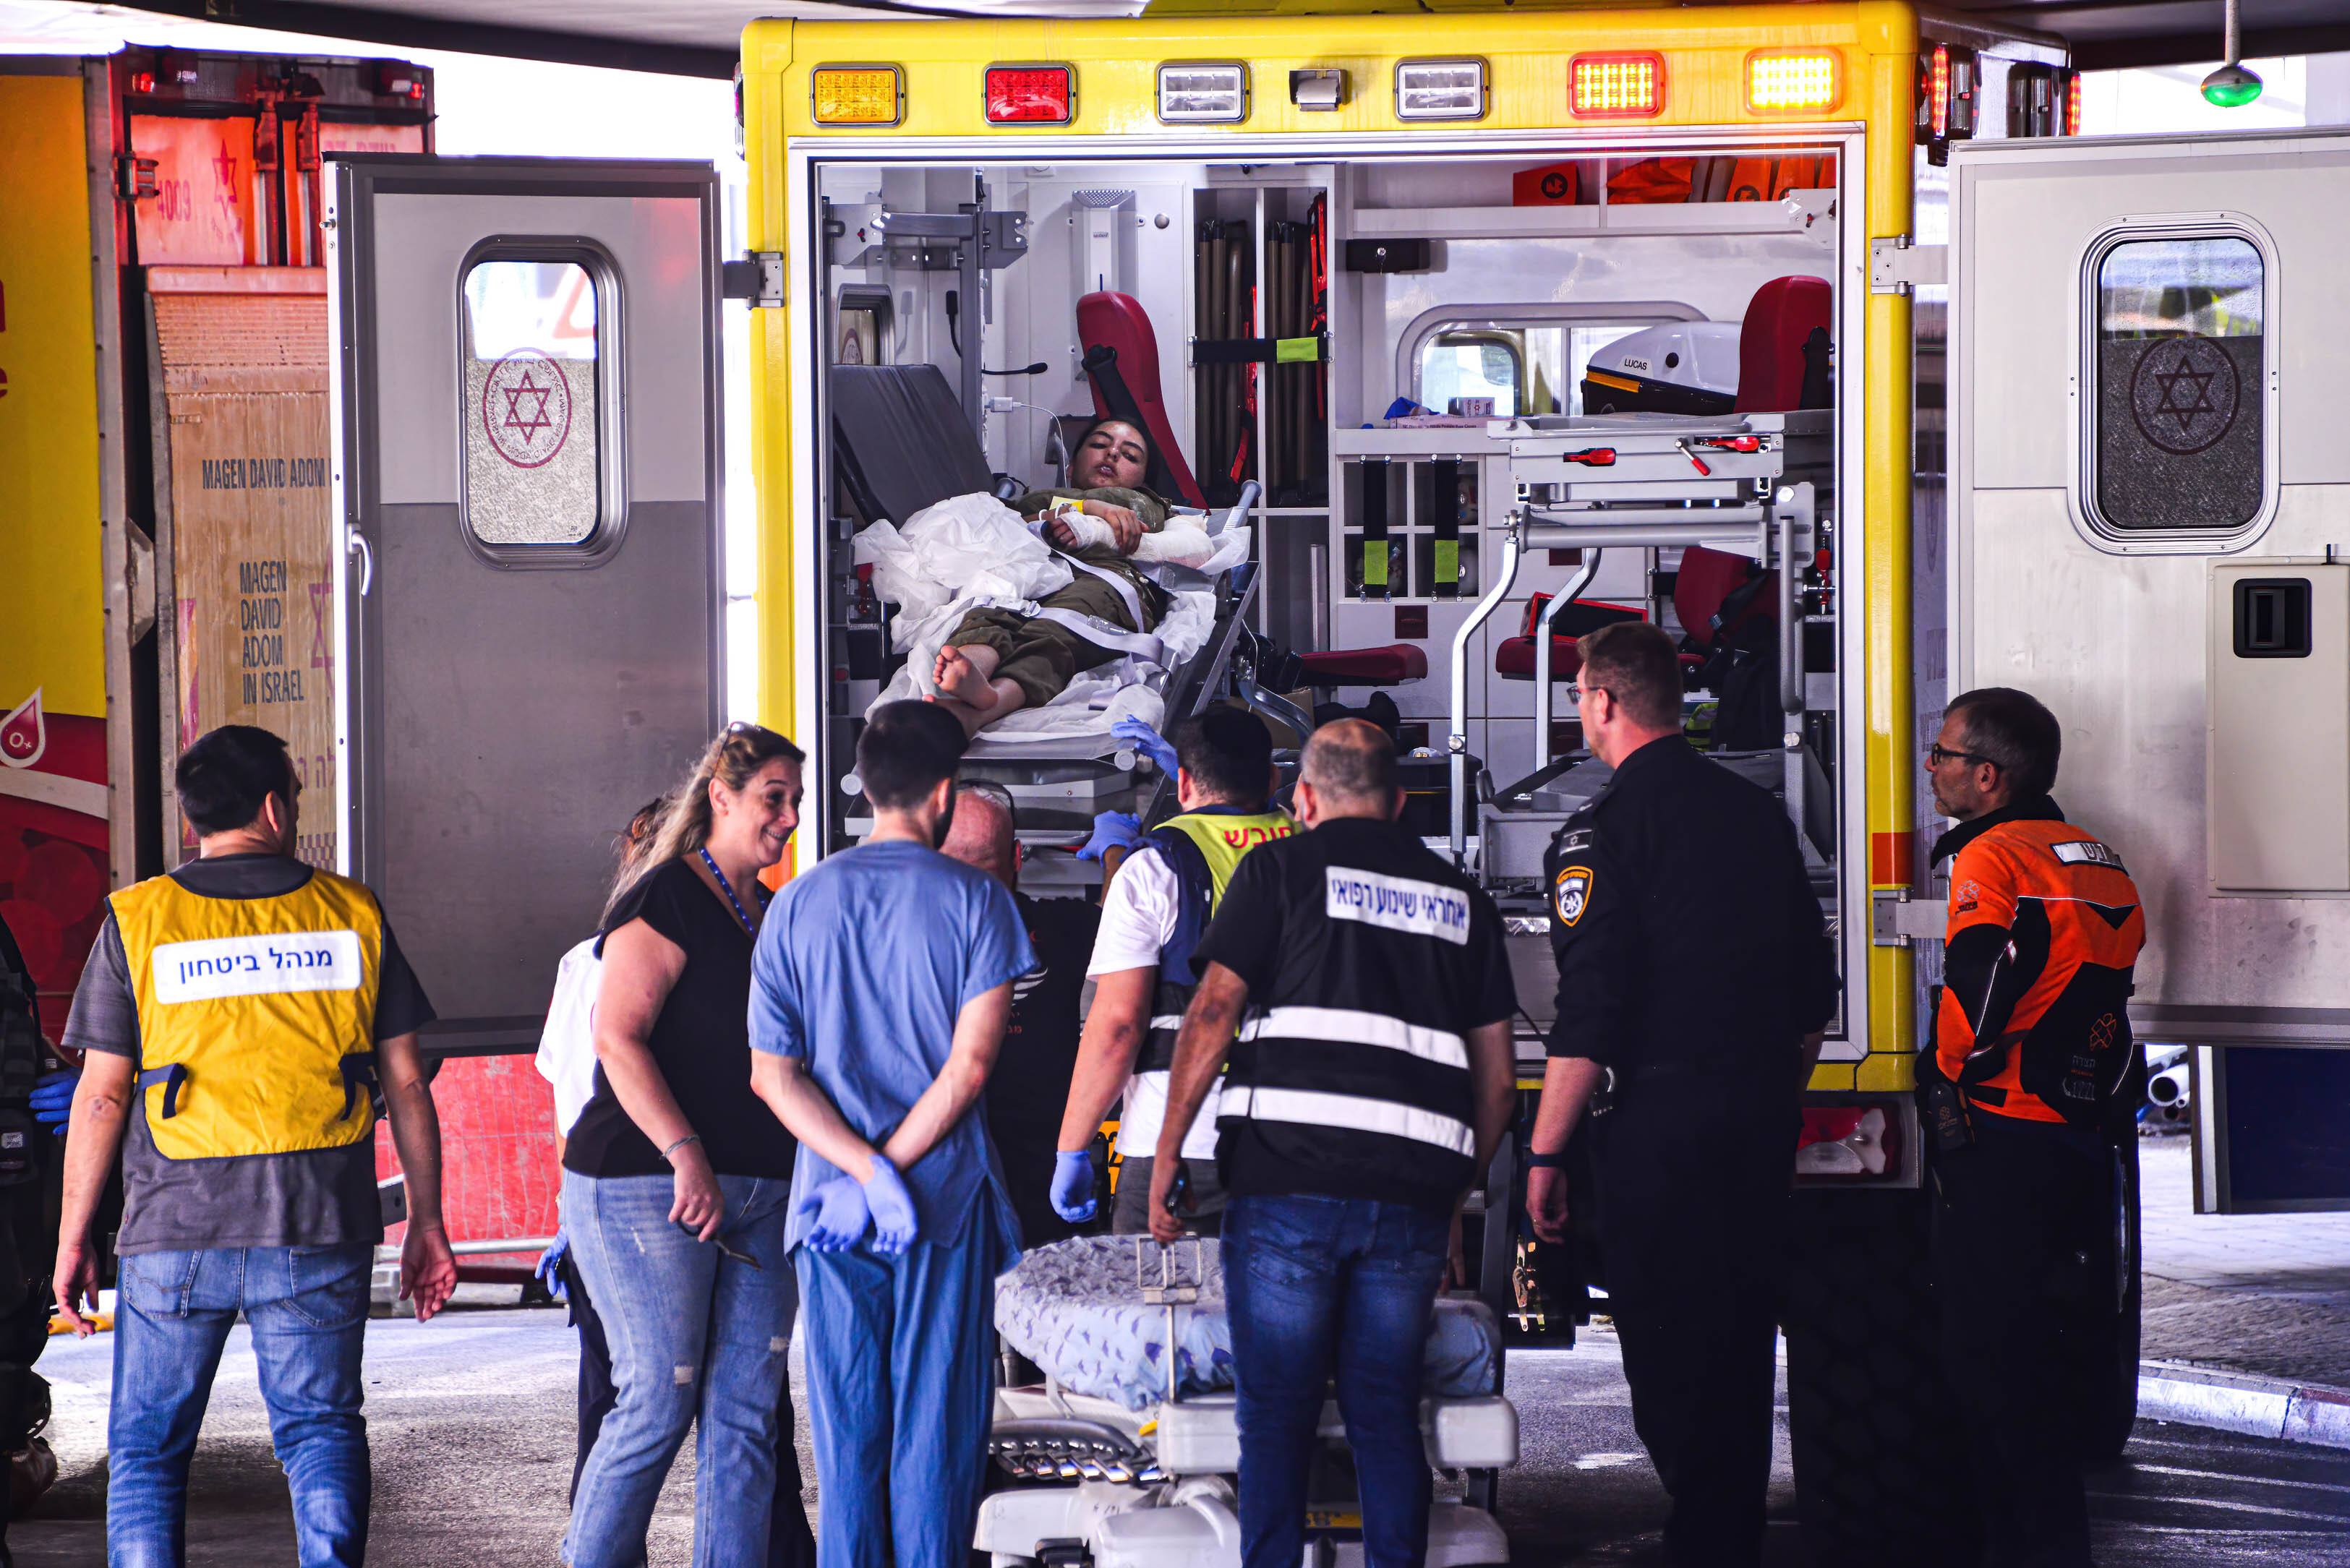 El testimoni d'un metge forense d'Israel: "La massacre que he vist aquí no l'havia vist mai"